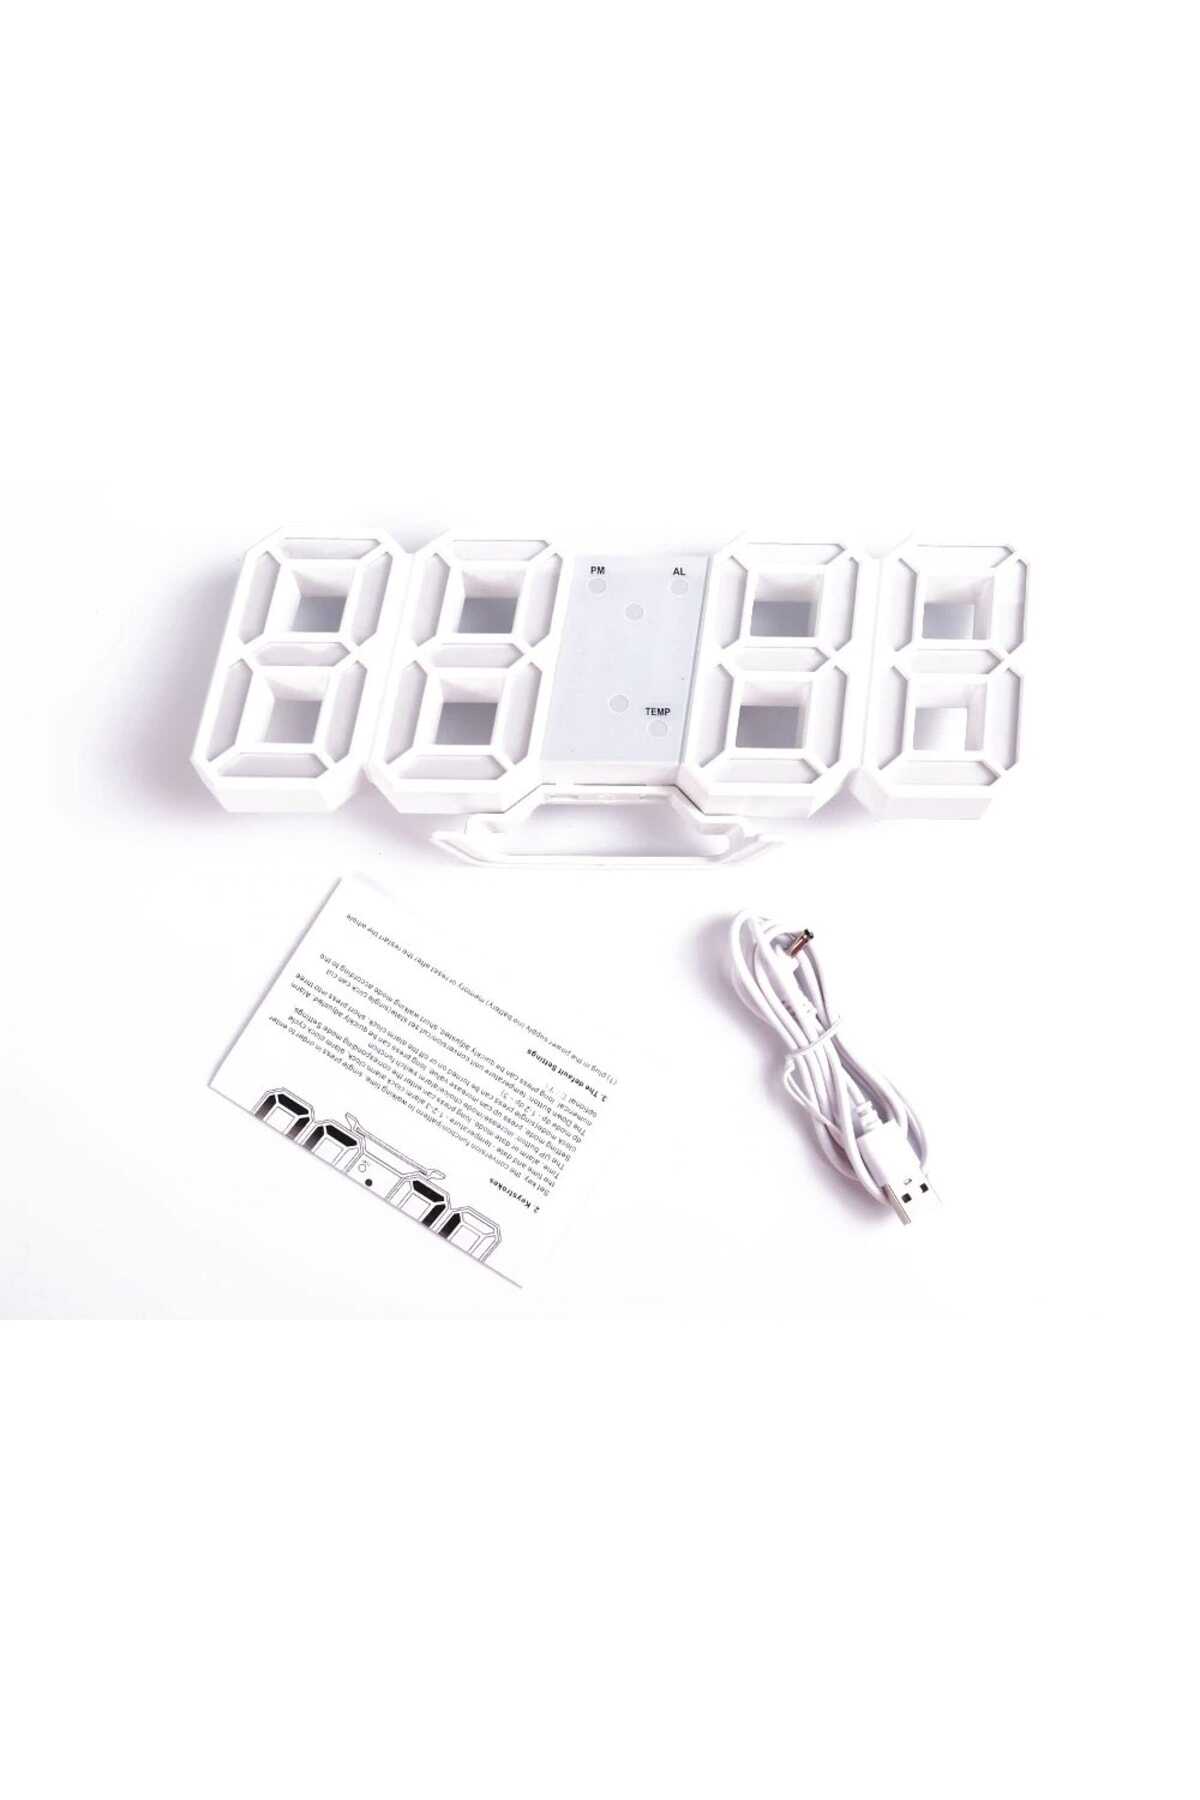 ساعت رومیزی - دیواری دیجیتال سفید برند DailyTech